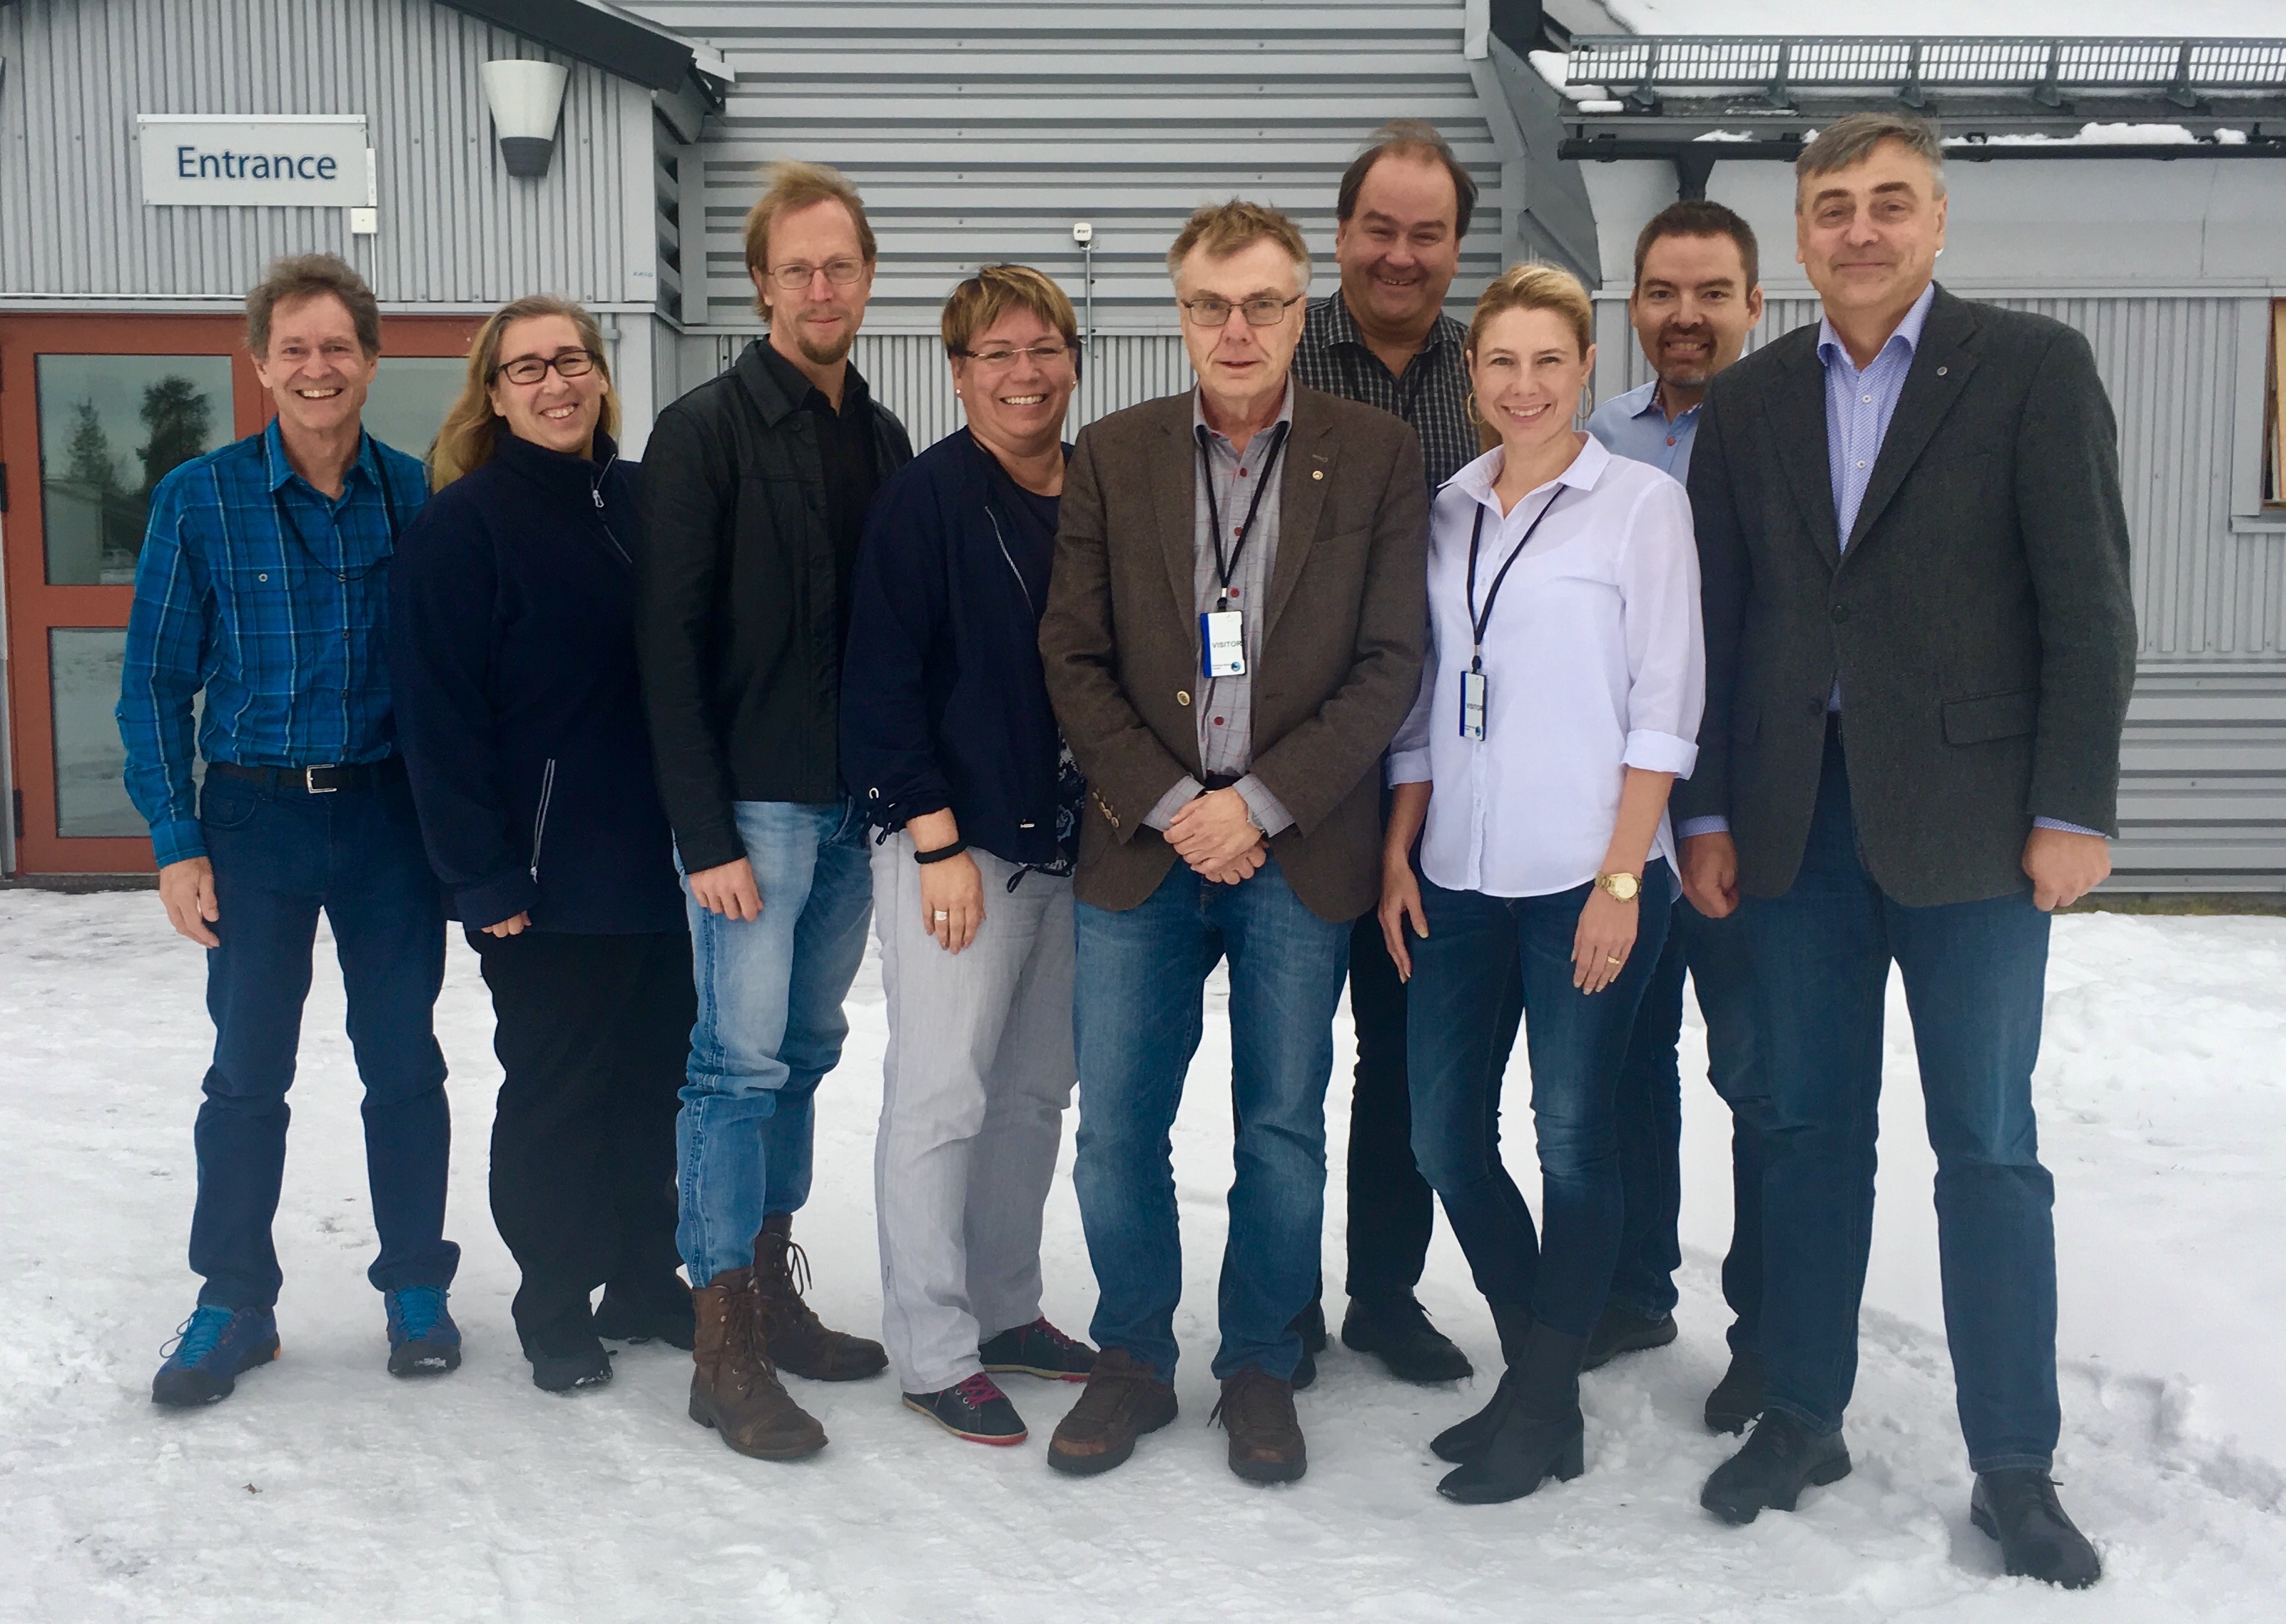 IRF's executive in October 2018, from left: Rick McGregor, Ella Carlsson Sjöberg, Hans Nilsson, Anna-Karin Ukonsaari, Mats André, Urban Brändström, Cecilia Flemström, Johan Kero, Stas Barabash. (Photo: Maria Wästle, IRF)